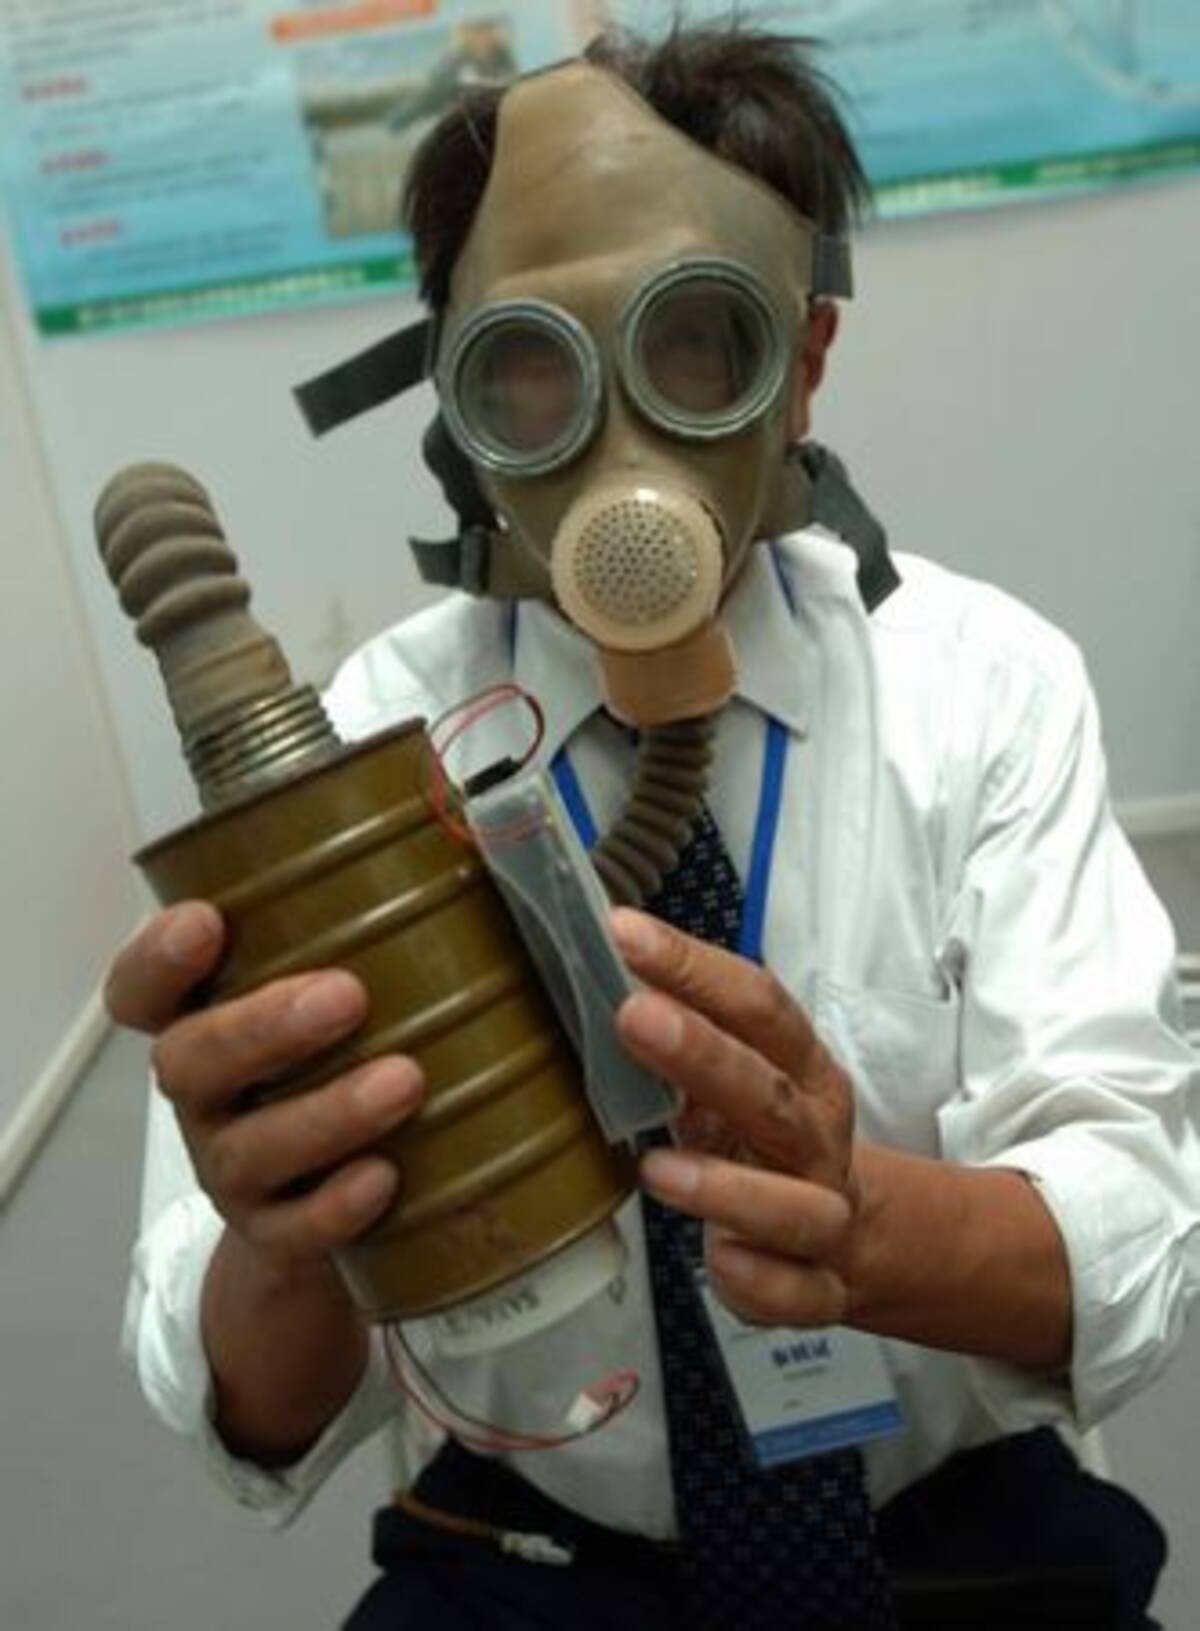 本当に必要になったら怖い 殺菌防毒マスク 発明展 08年10月17日 エキサイトニュース